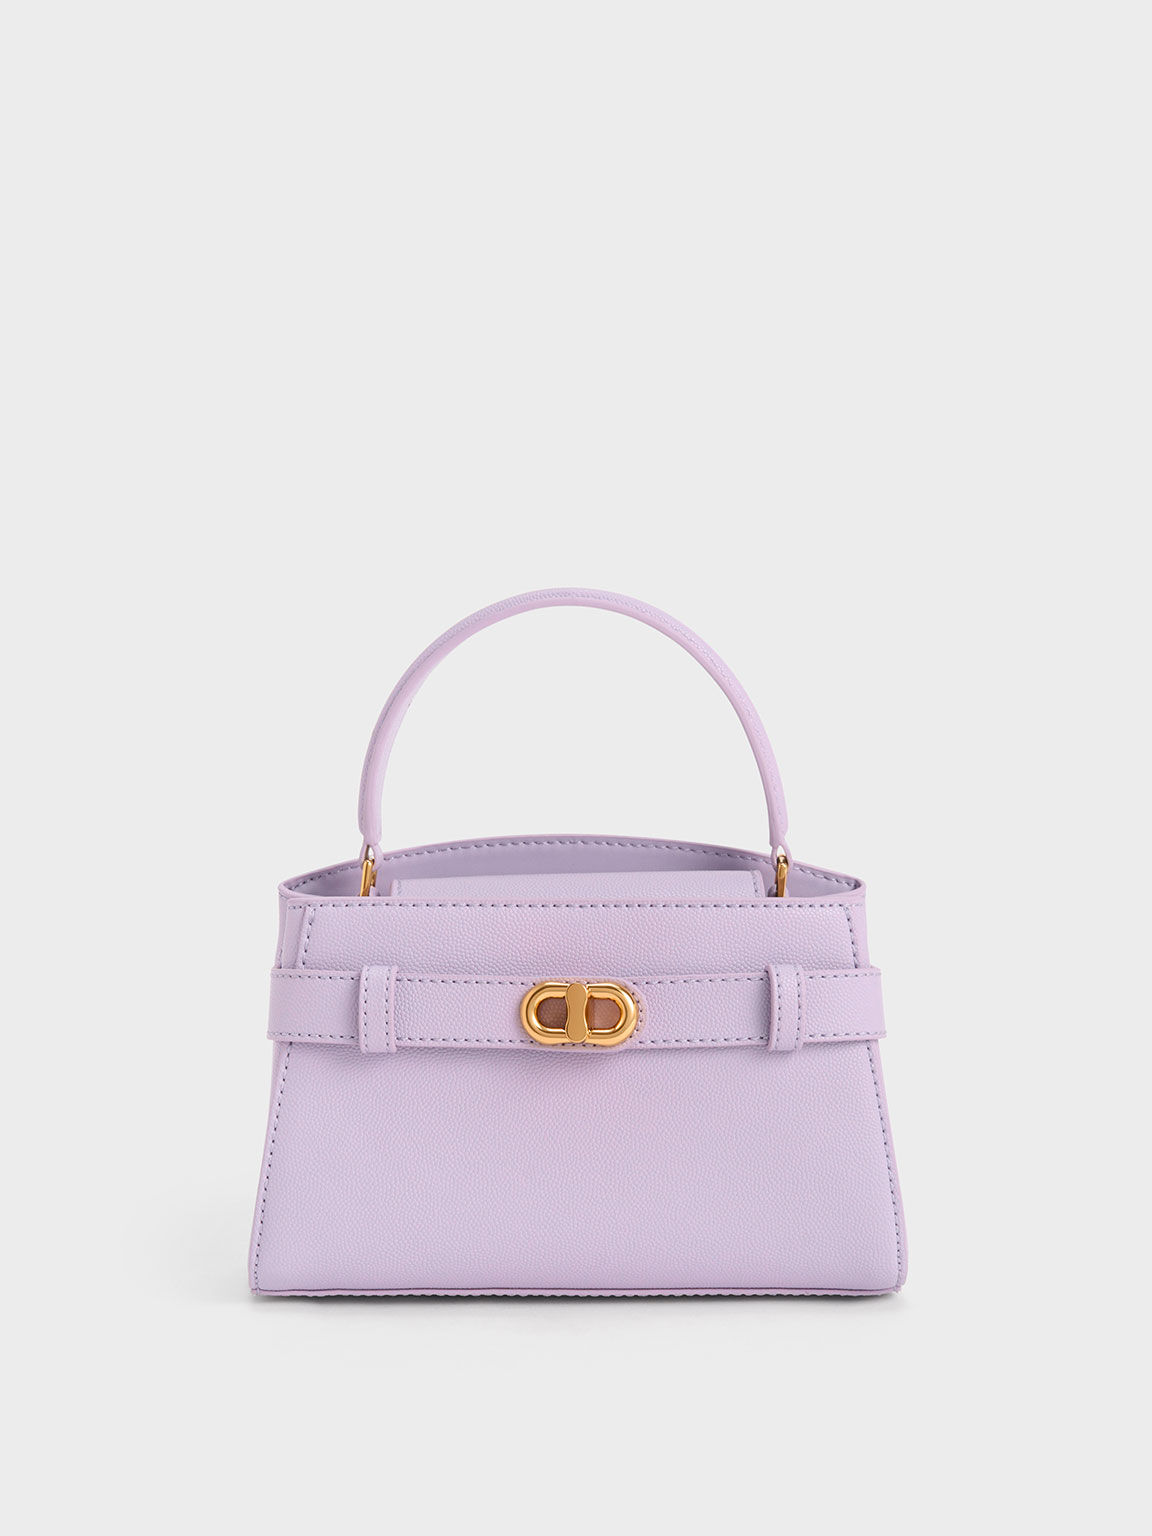 復古金轉釦手提包, 紫丁香色, hi-res